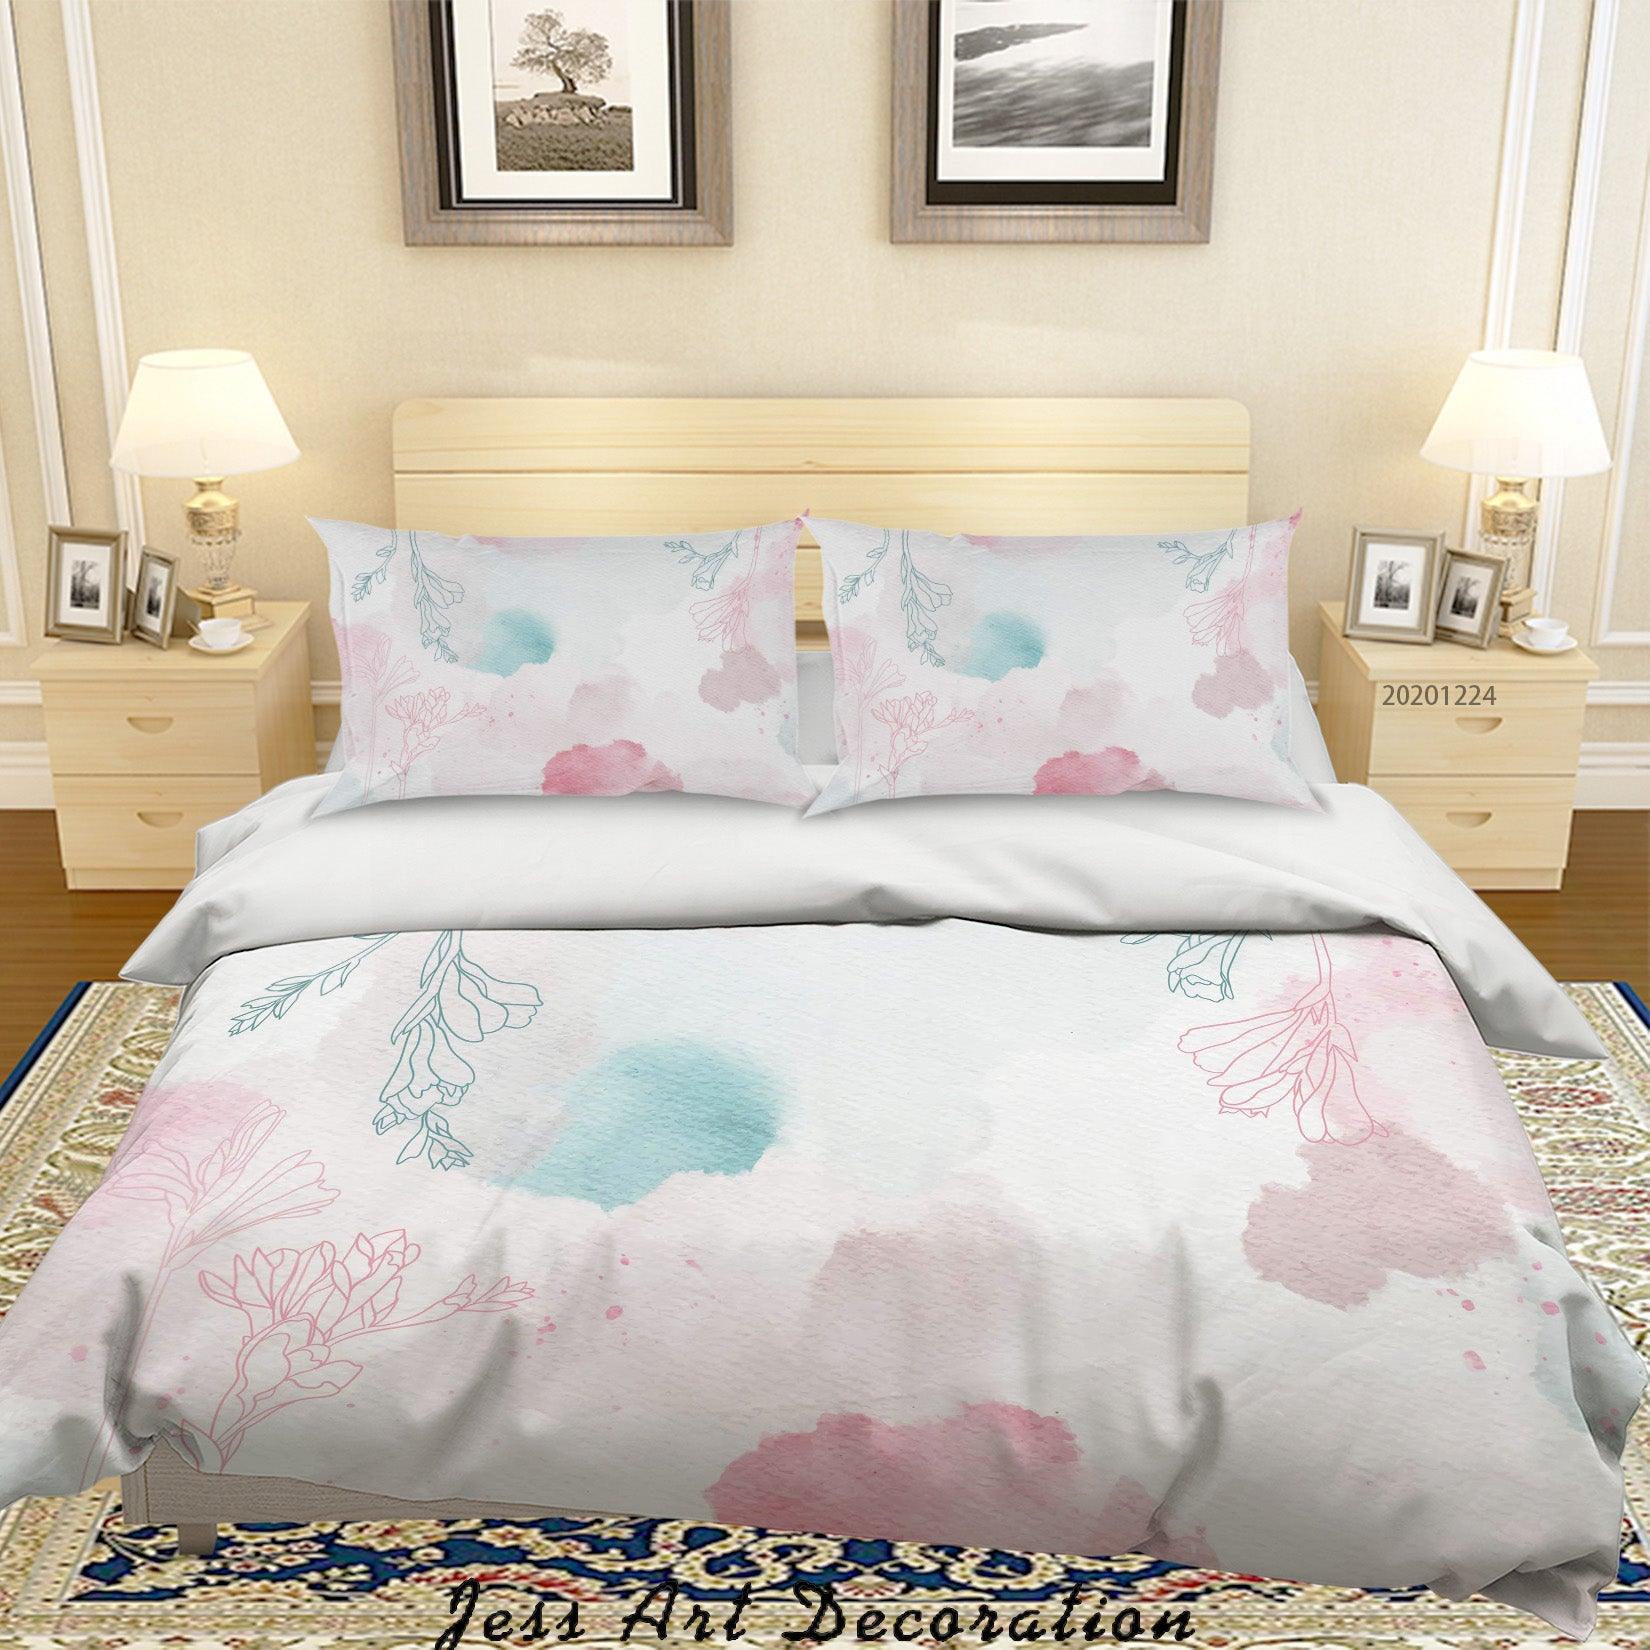 3D Watercolor Pink Floral Quilt Cover Set Bedding Set Duvet Cover Pillowcases 15 LQH- Jess Art Decoration